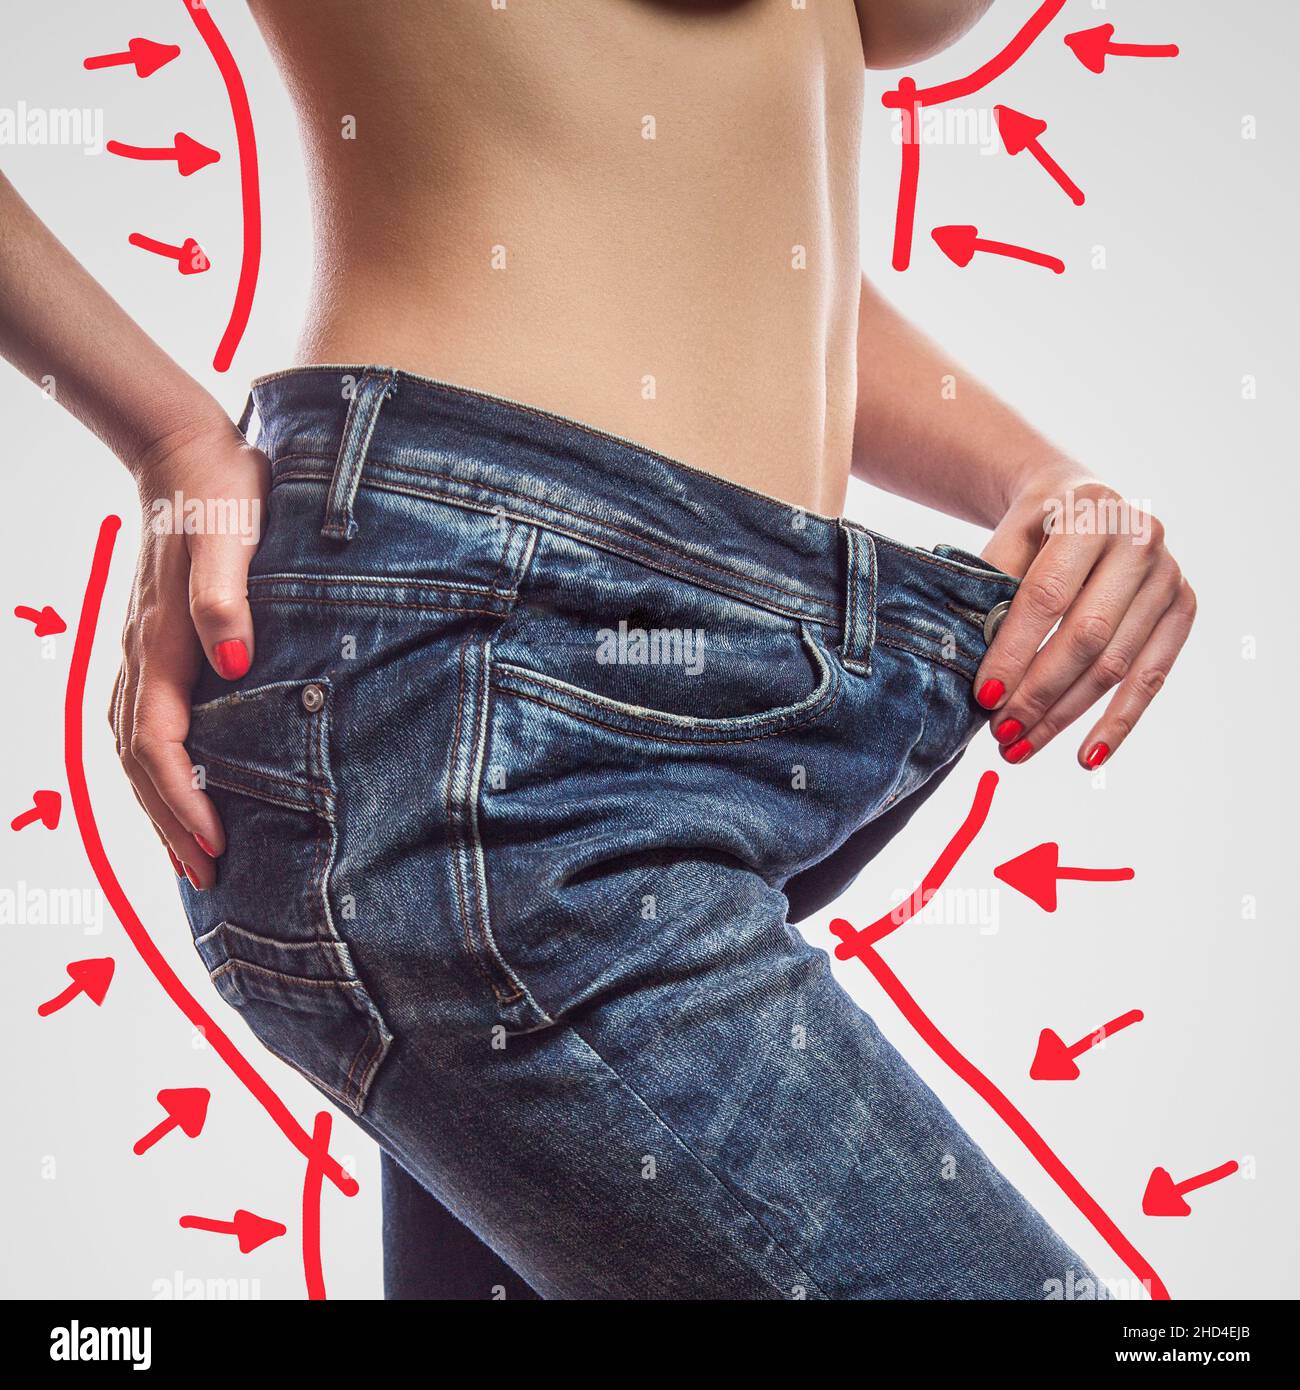 Primer plano de cintura delgada de mujer joven de pie en jeans grandes que muestran una pérdida de peso exitosa, estudio de interior tiro, aislado sobre fondo gris claro, concepto de dieta. Foto de stock